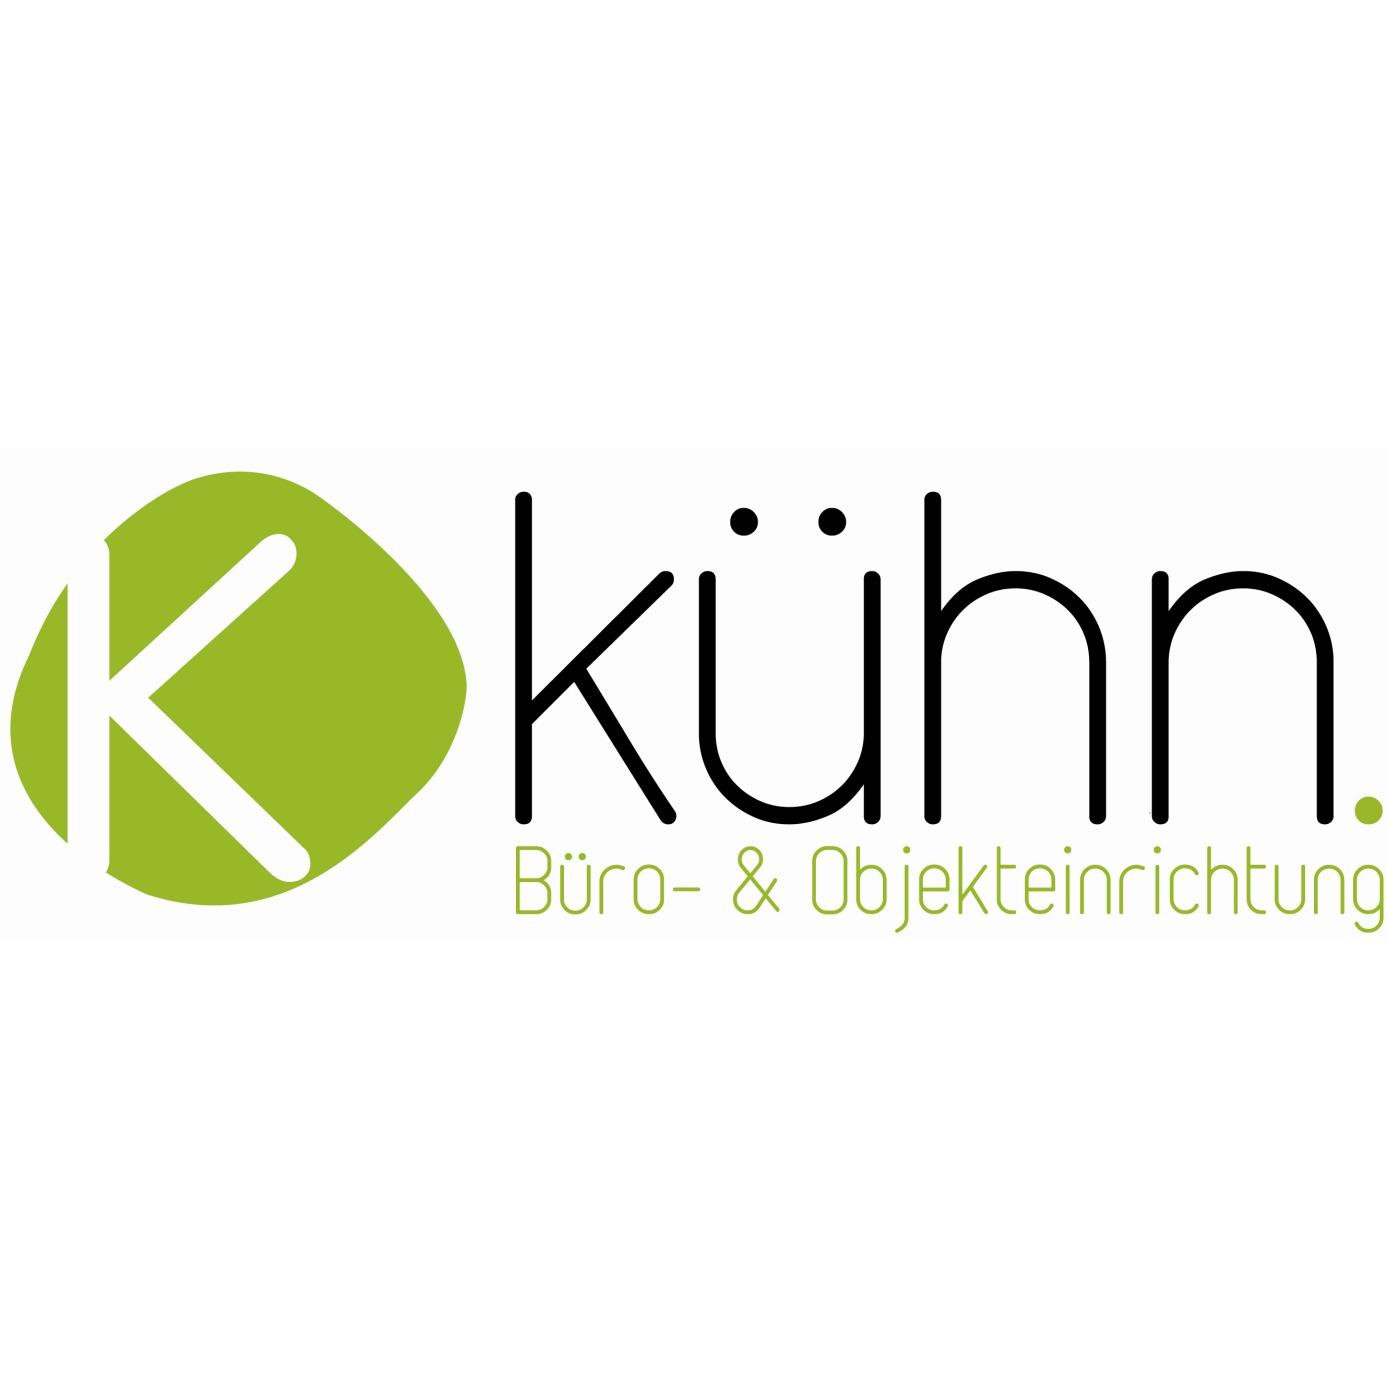 Kühn Büro- & Objekteinrichtung GmbH - Ihr Palmberg Händler aus Schwerin - Office Furniture Store - Schwerin - 0385 59181310 Germany | ShowMeLocal.com